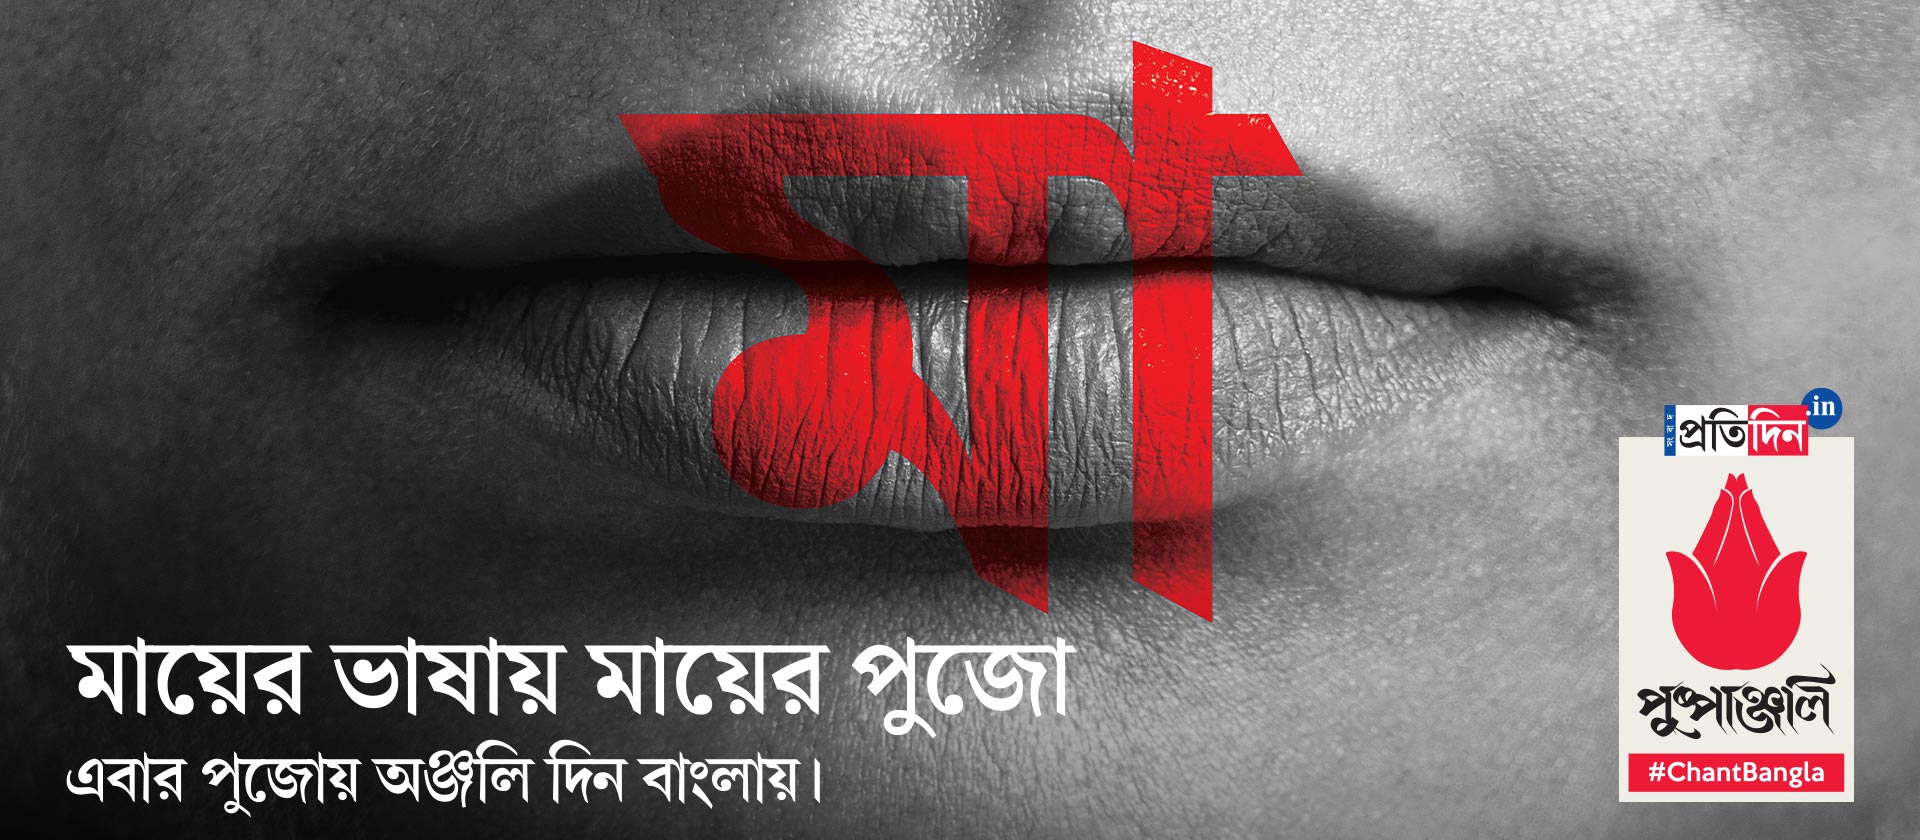 Pushpanjali mantra in Bangla on the day of Ashtami | Pushpanjali #ChantBangla